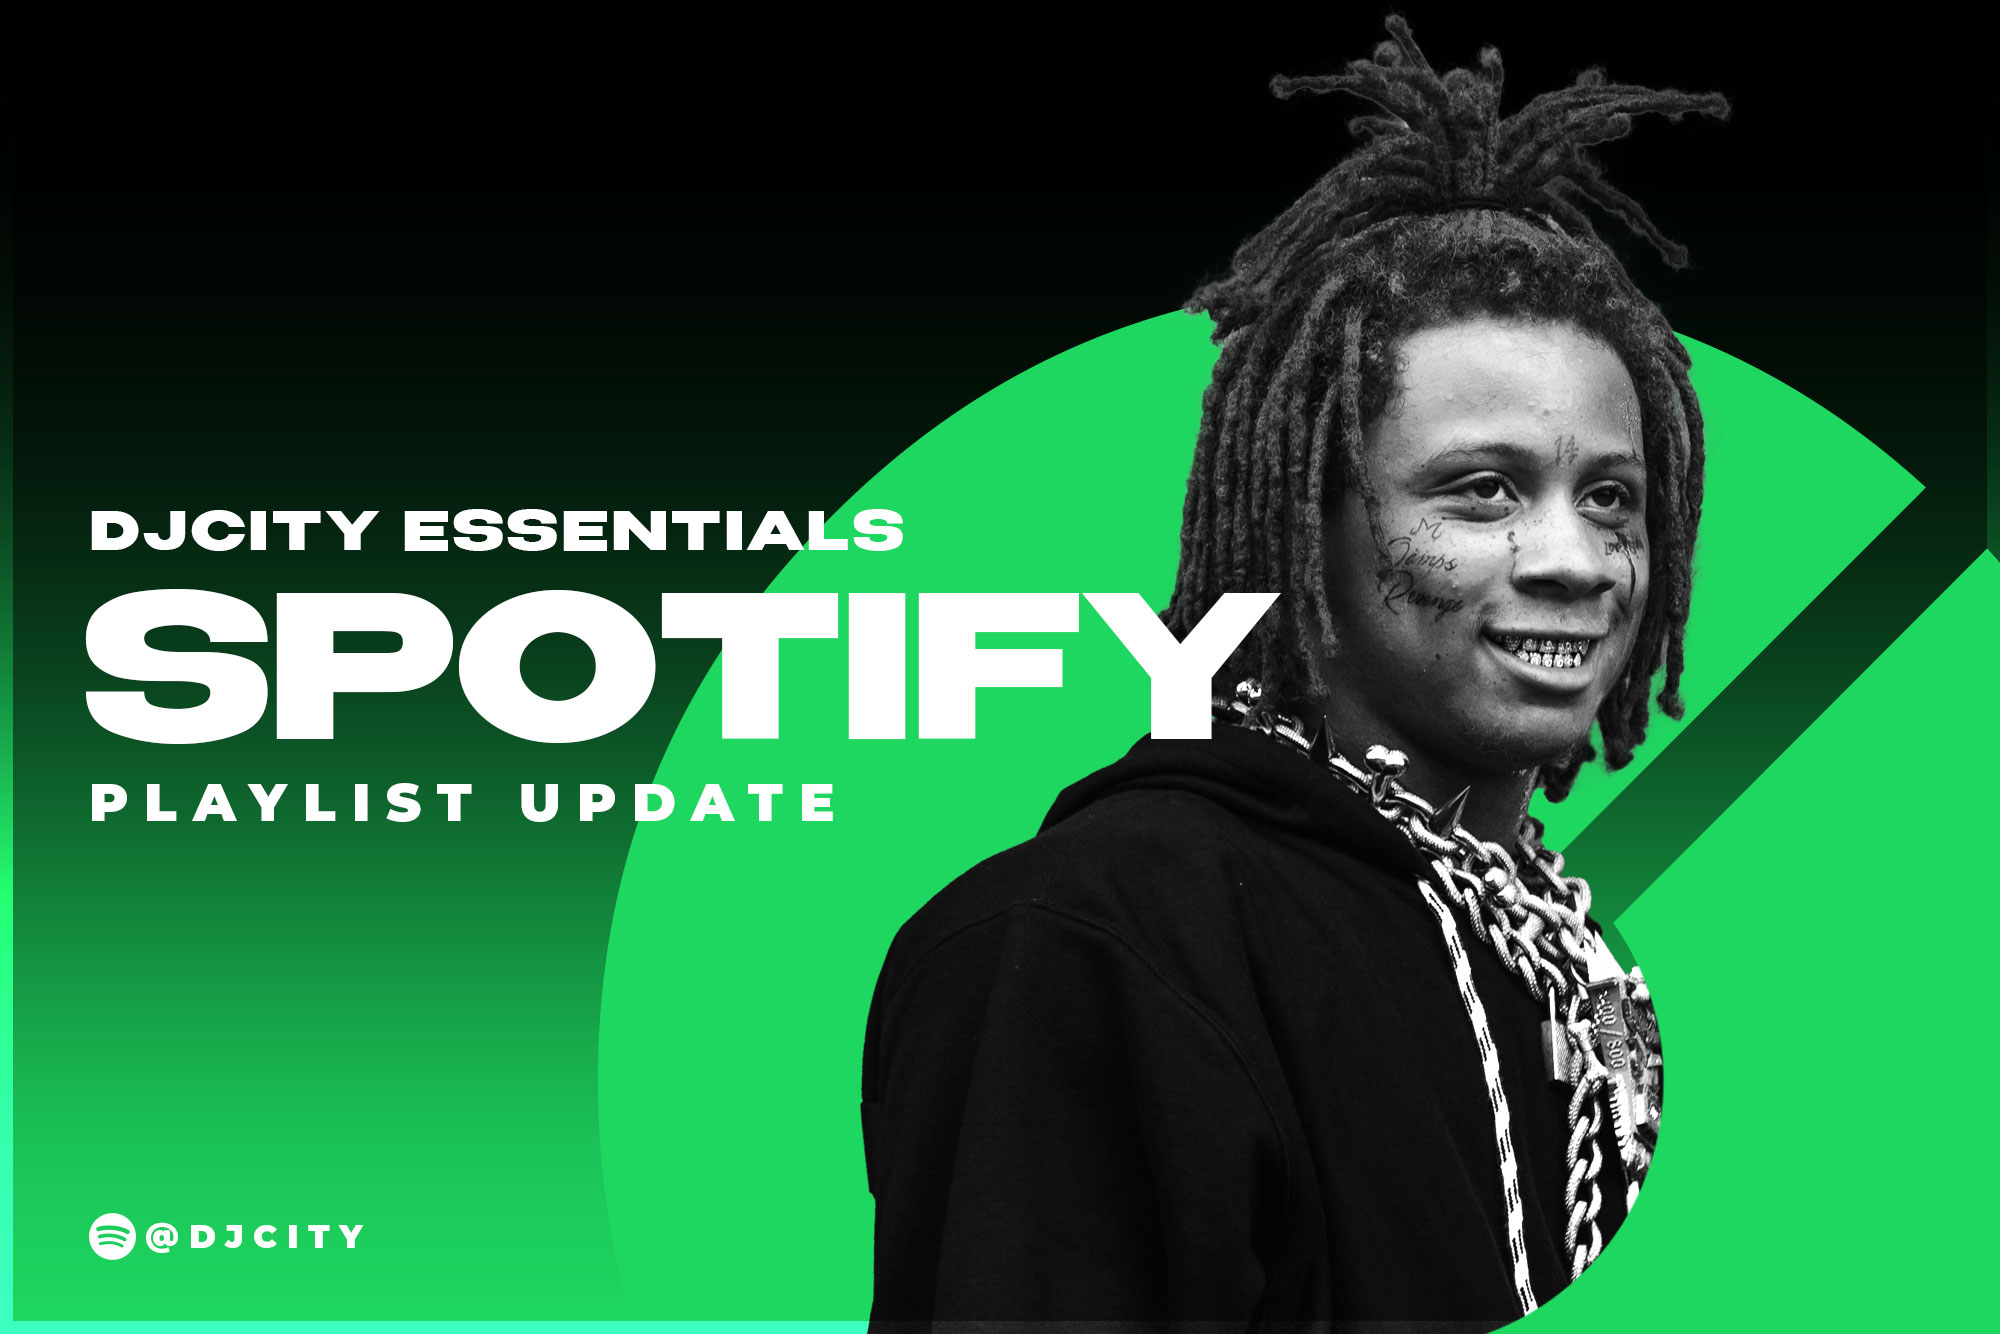 DJcity’s Spotify Playlist Update: Aug. 31